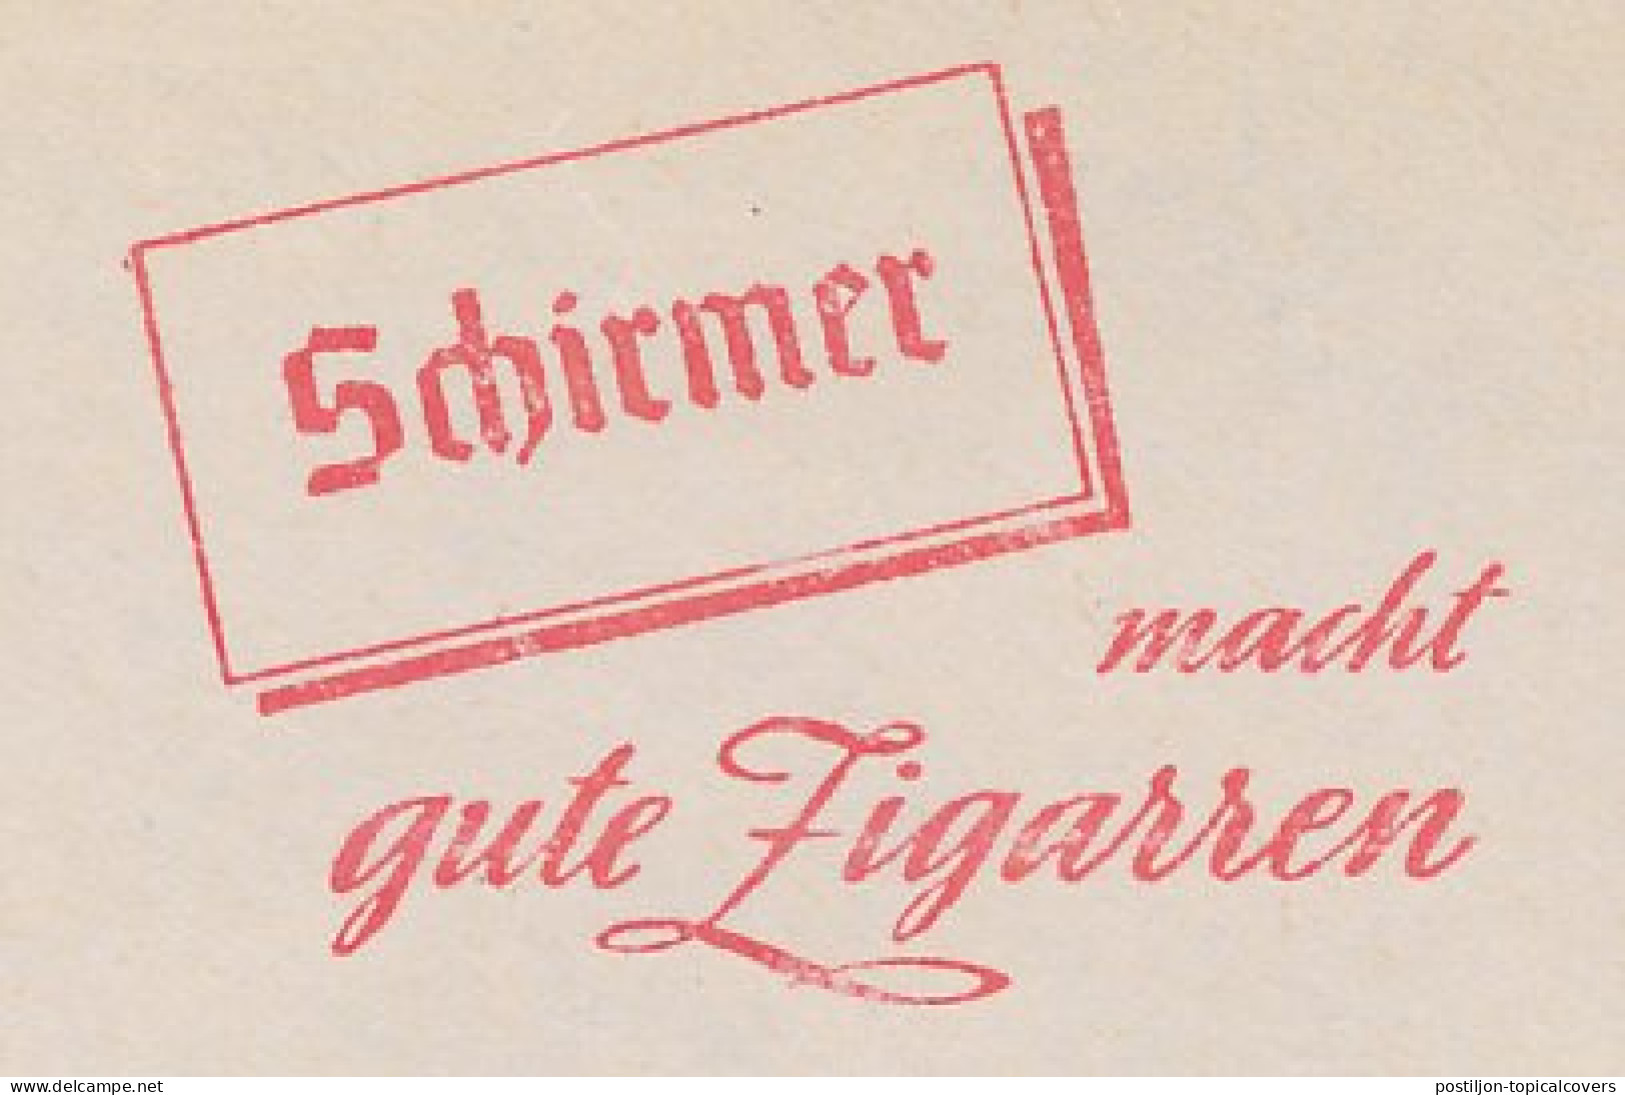 Meter Cut Germany 1960 Cigar - Schirmer - Tobacco